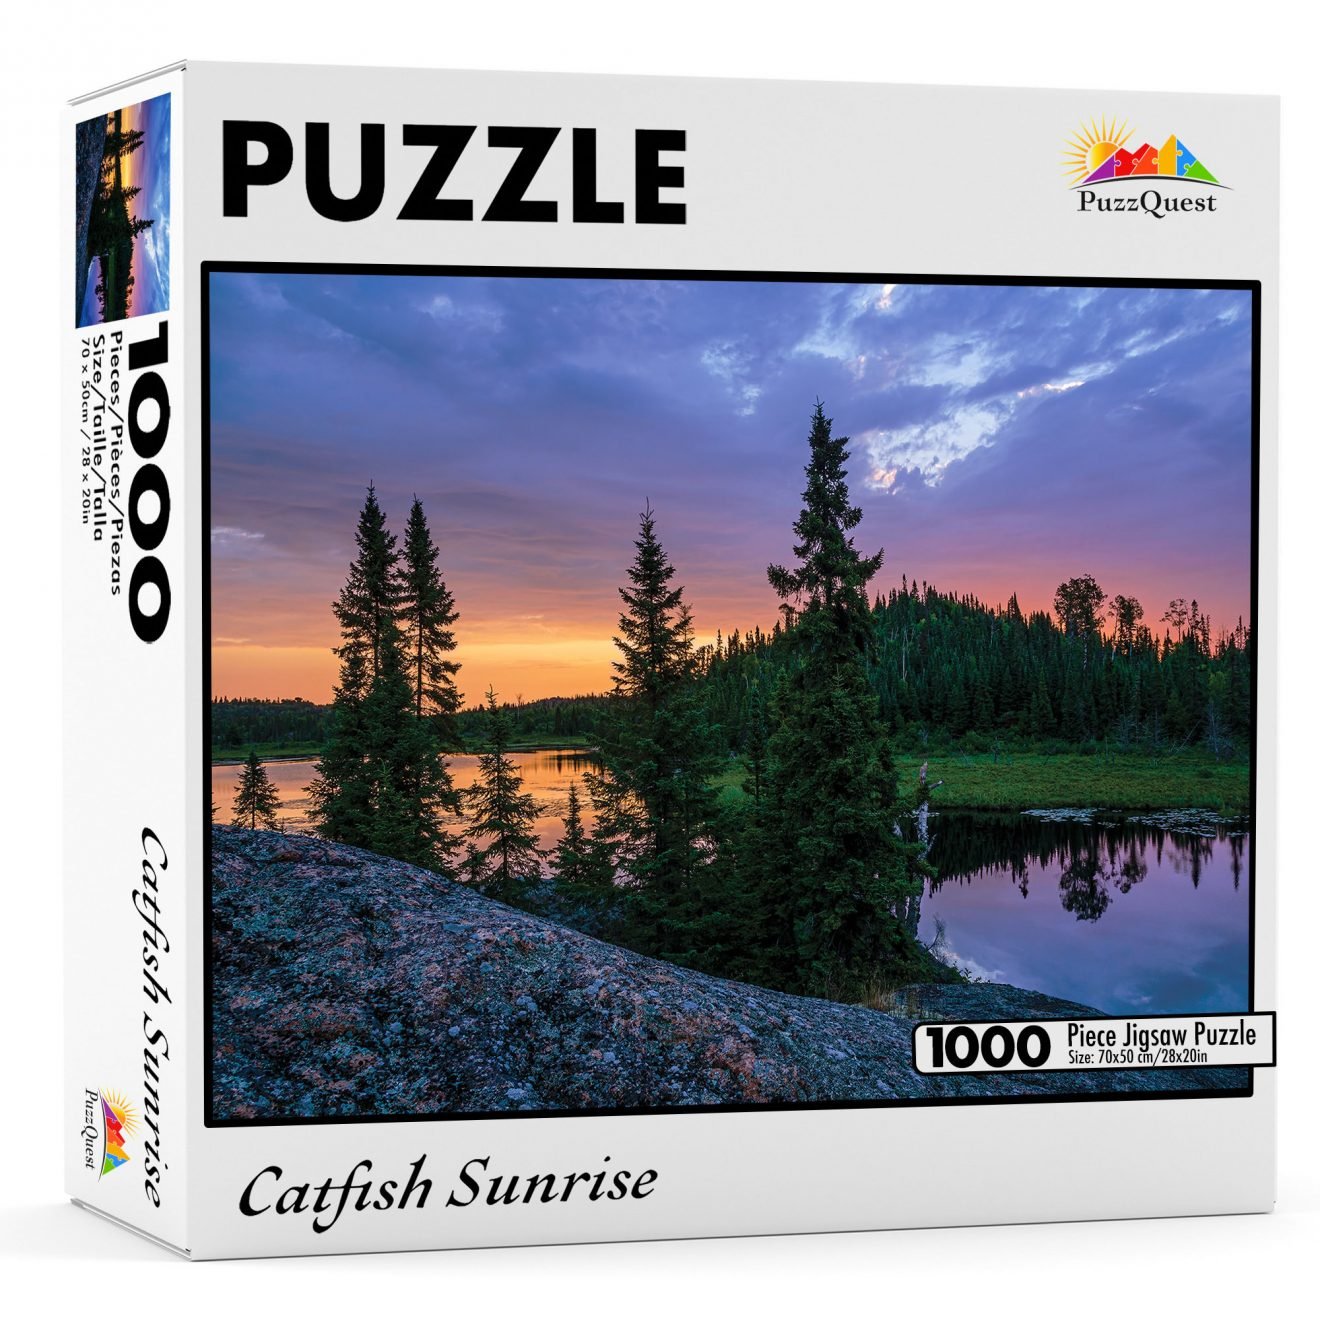 Catfish Sunrise 1000 piece jigsaw puzzle